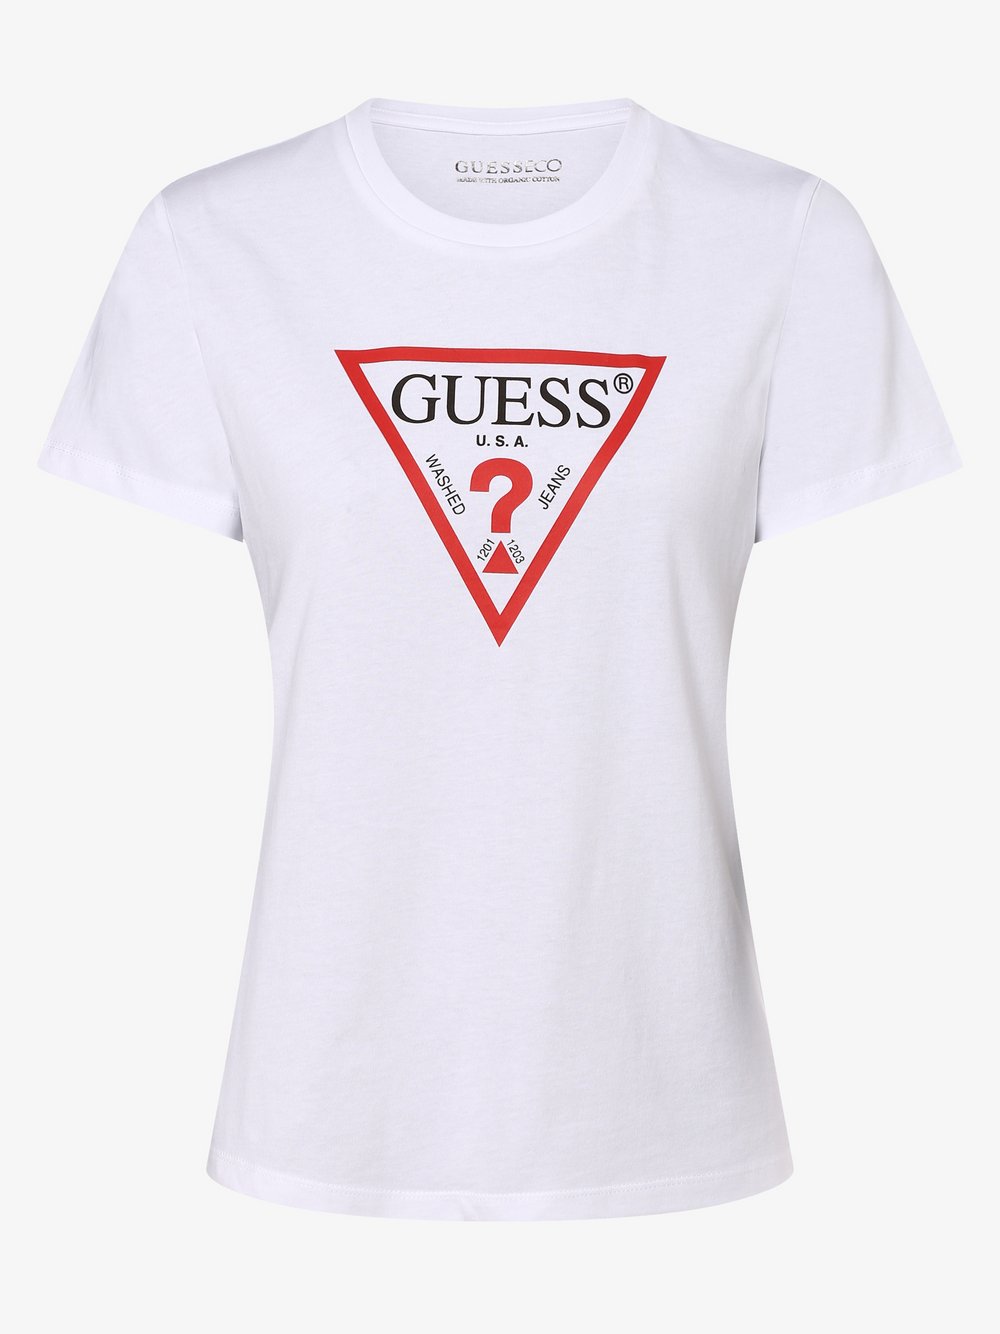 GUESS - T-shirt damski, biały